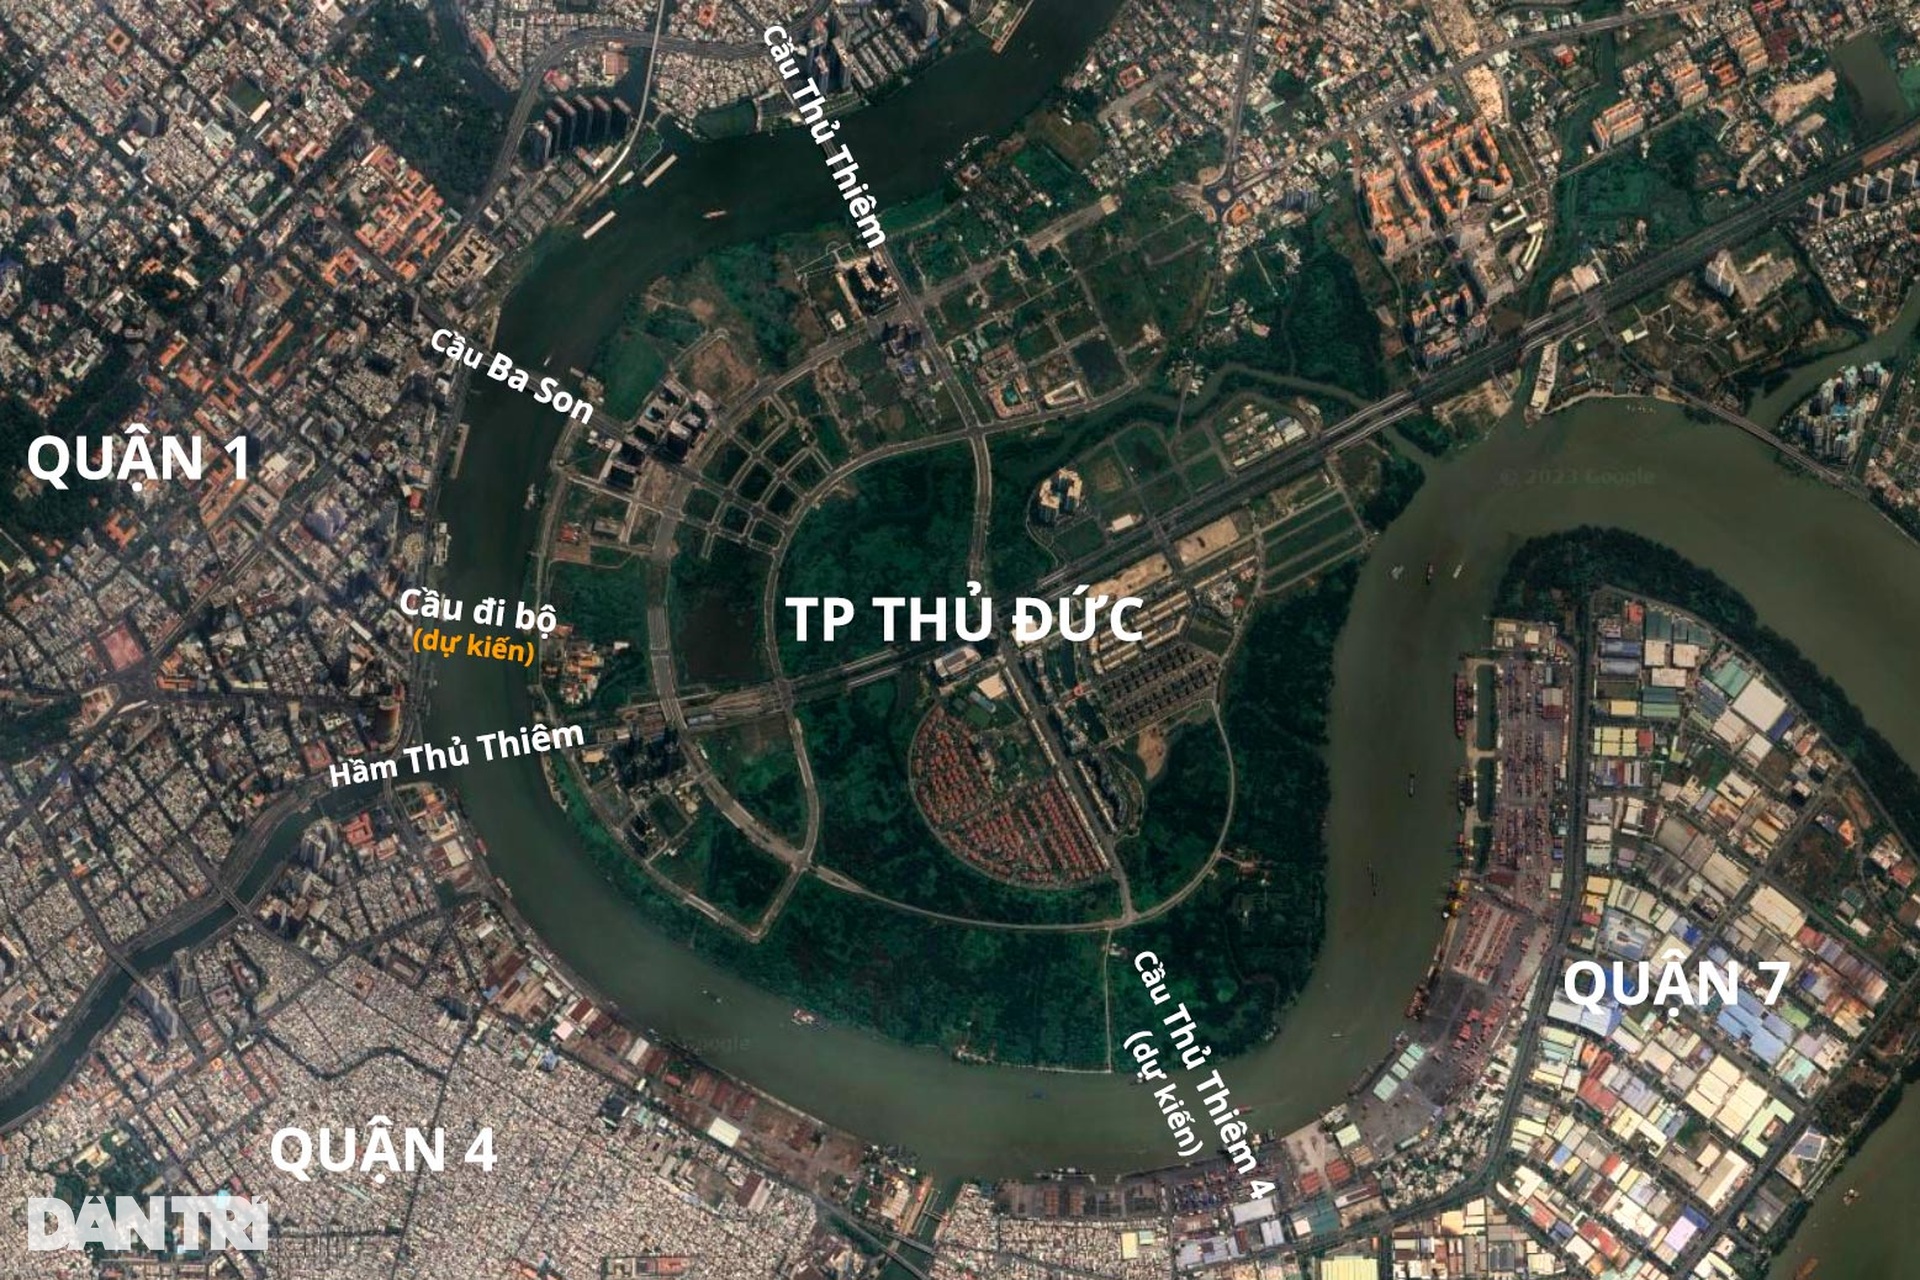 Ngắm thiết kế cầu đi bộ hình lá dừa nước trên sông Sài Gòn - Ảnh 11.